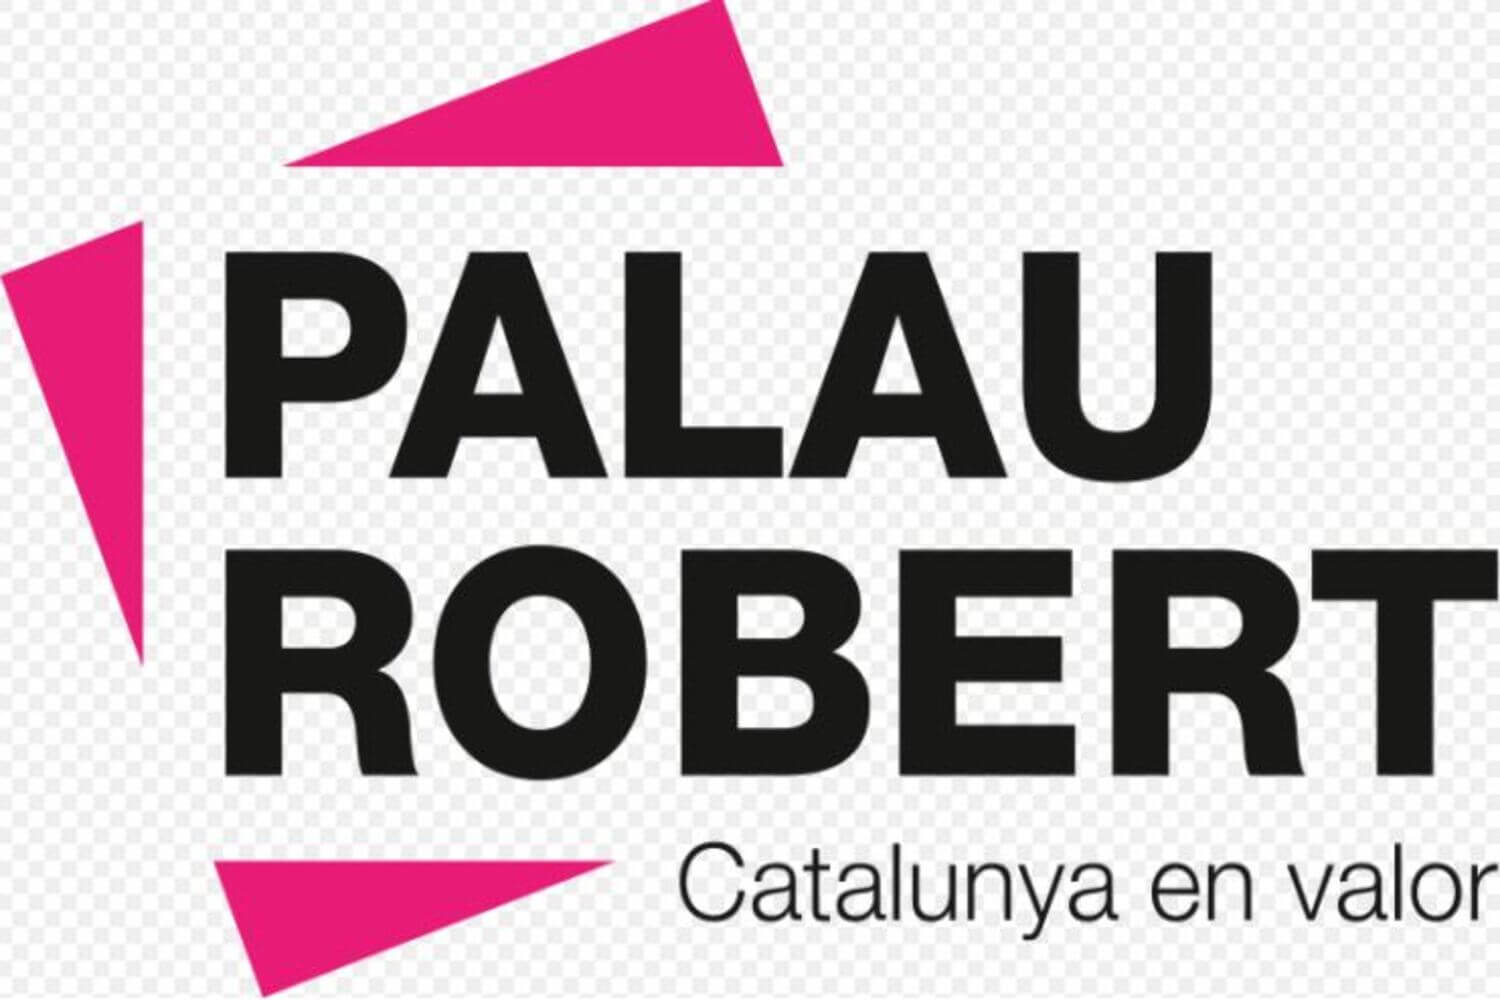 Palau Robert, discover this master piece at 107 of Passeig de Gràcia.